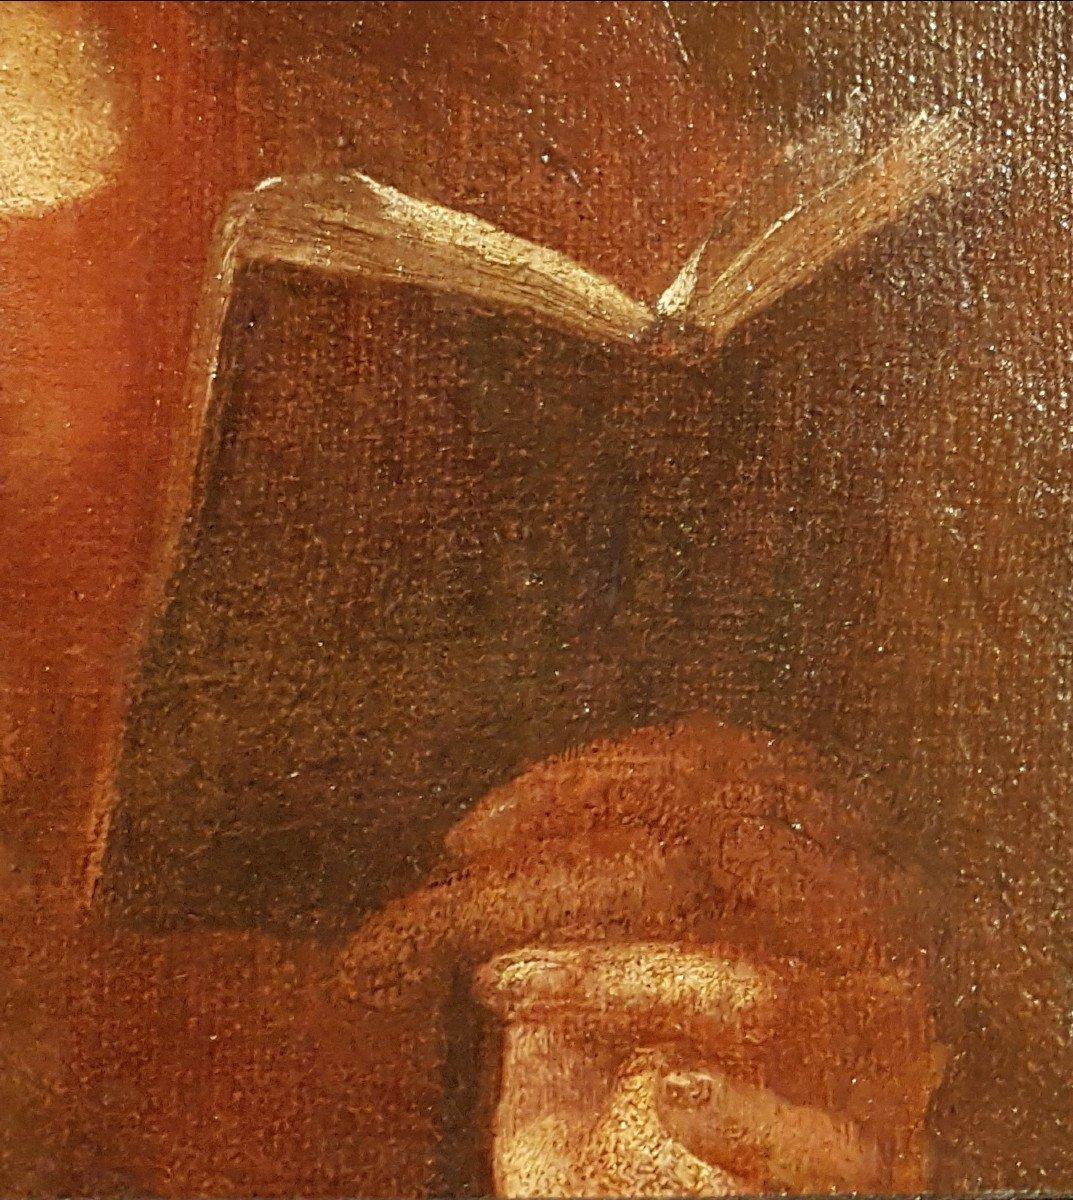 Giovanni Battista PIAZZETTA (Werkstatt von) Venedig, 1683 - Venedig, 1754 Öl auf Leinwand 48 x 38,5 cm (64 x 58 cm mit dem Rahmen)

Piazzetta malte eine Reihe von 